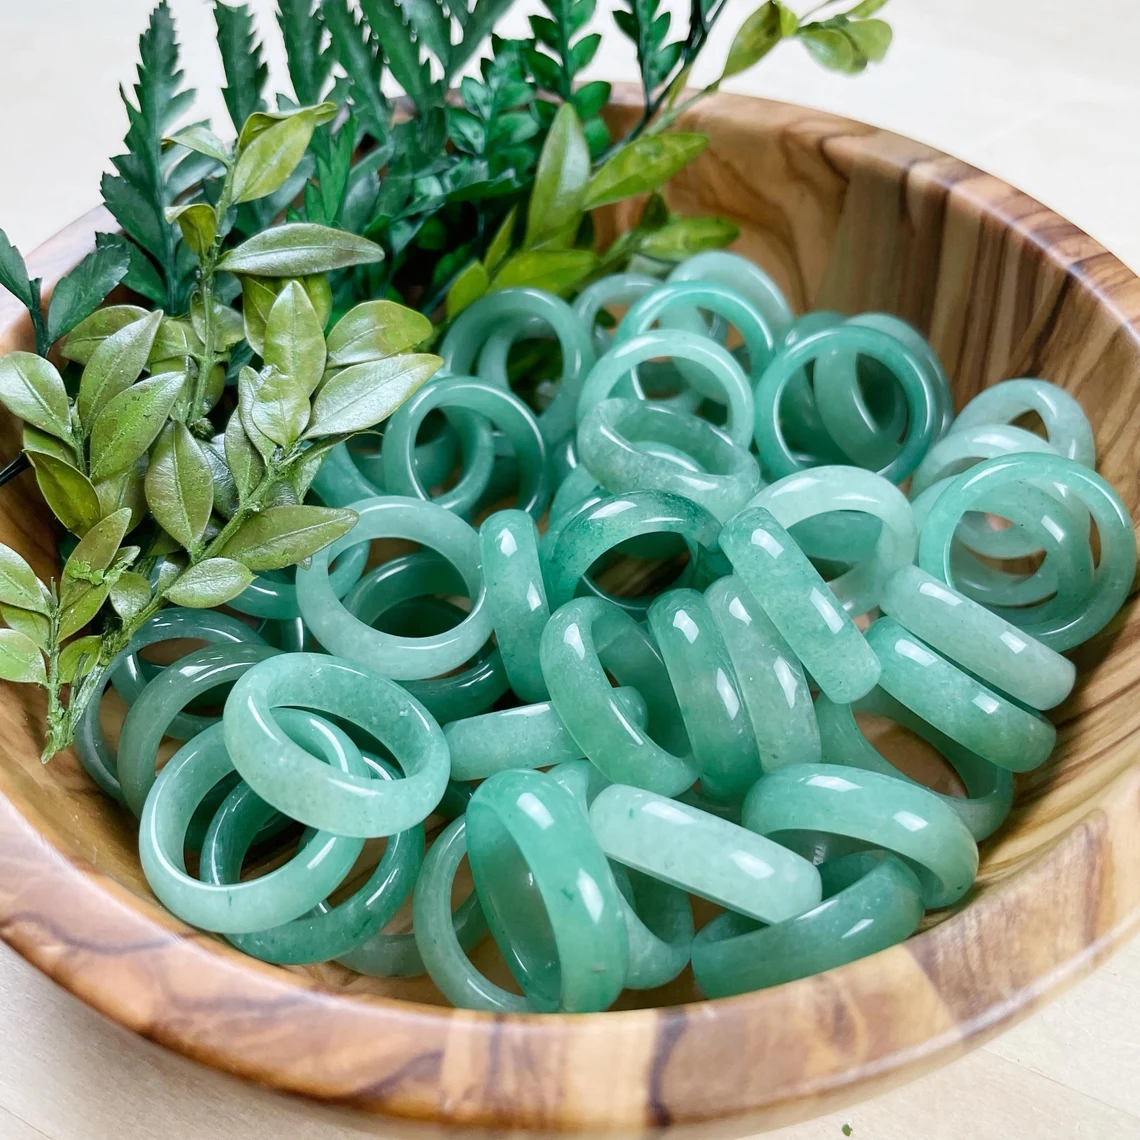 aventurine rings in wooden bowl